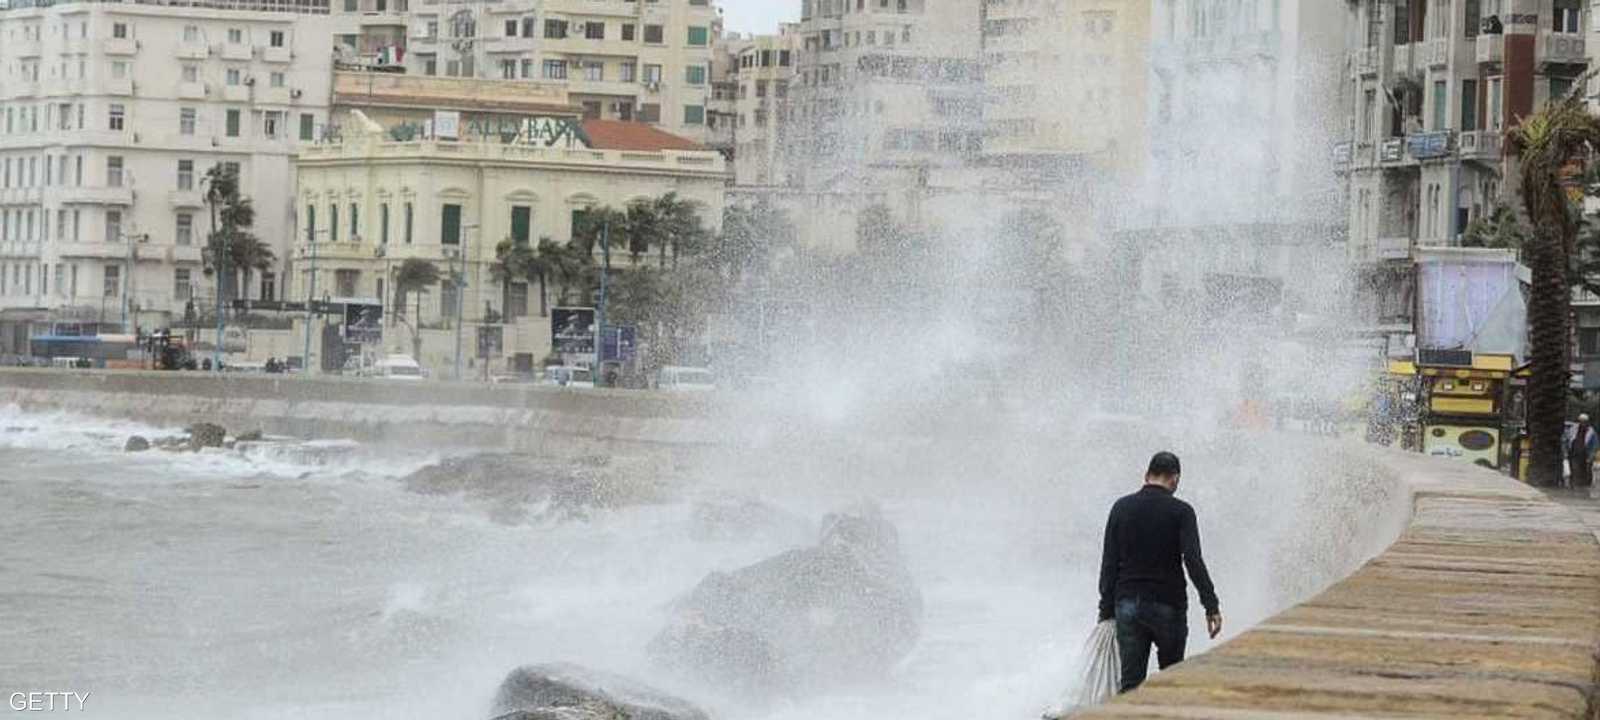 مصر.. فتح ميناءين وإغلاق أخرى بسبب الطقس السيئ